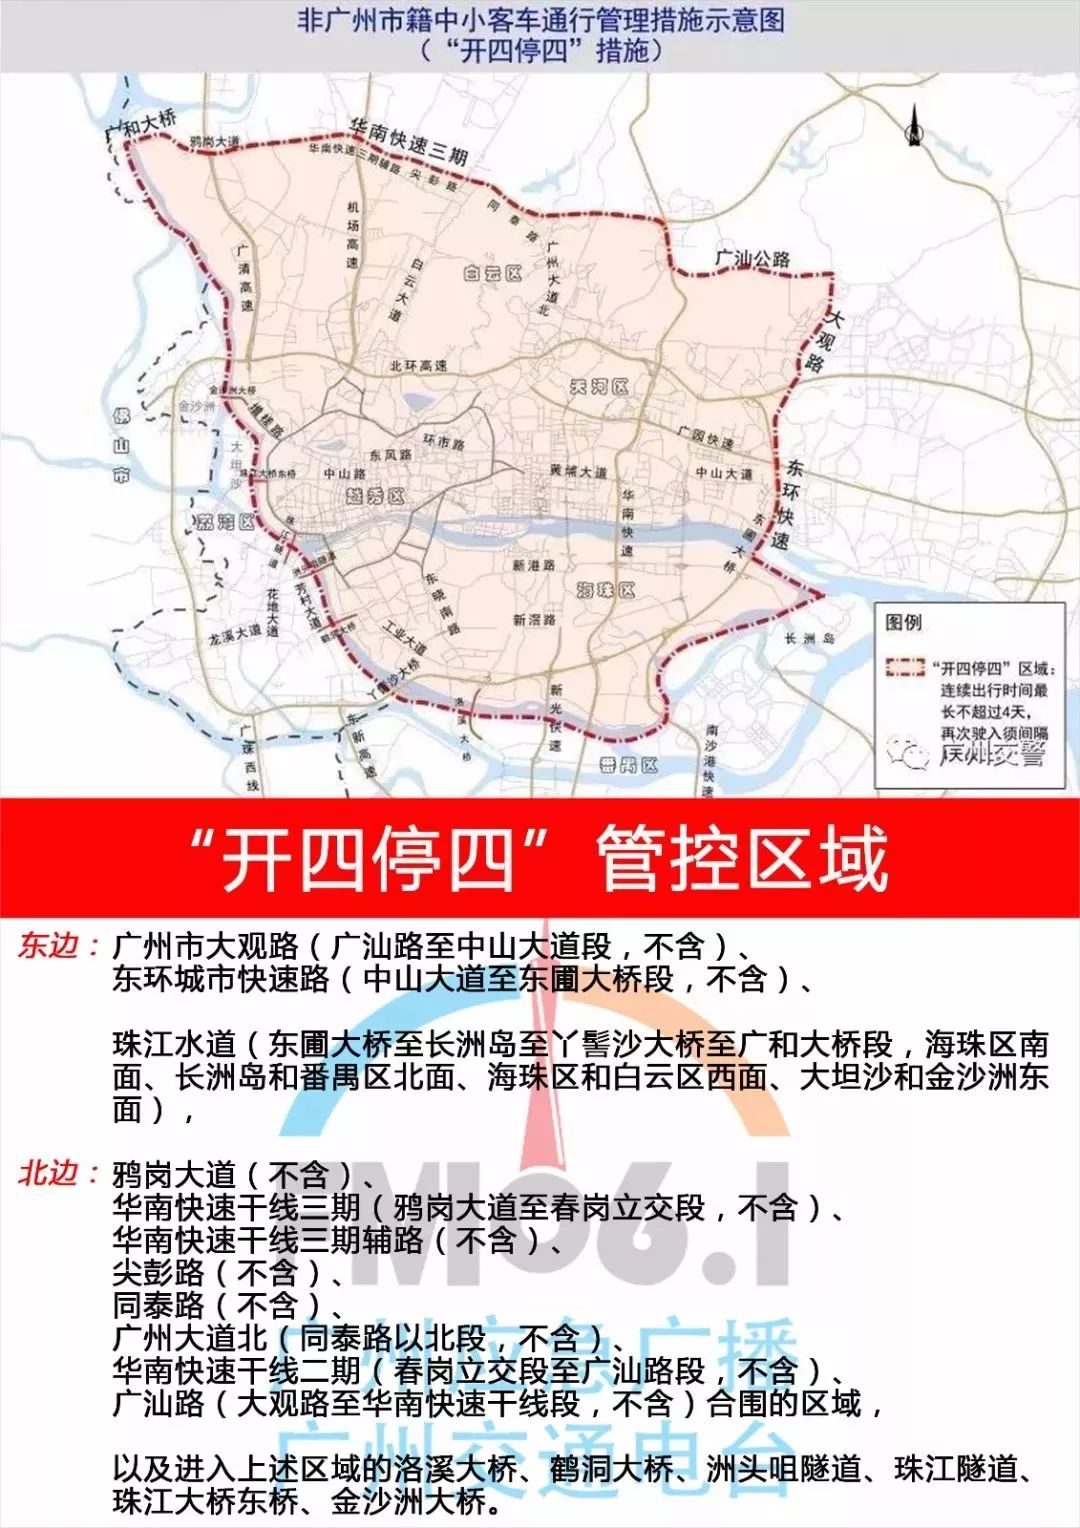 广州限行区域图解图片